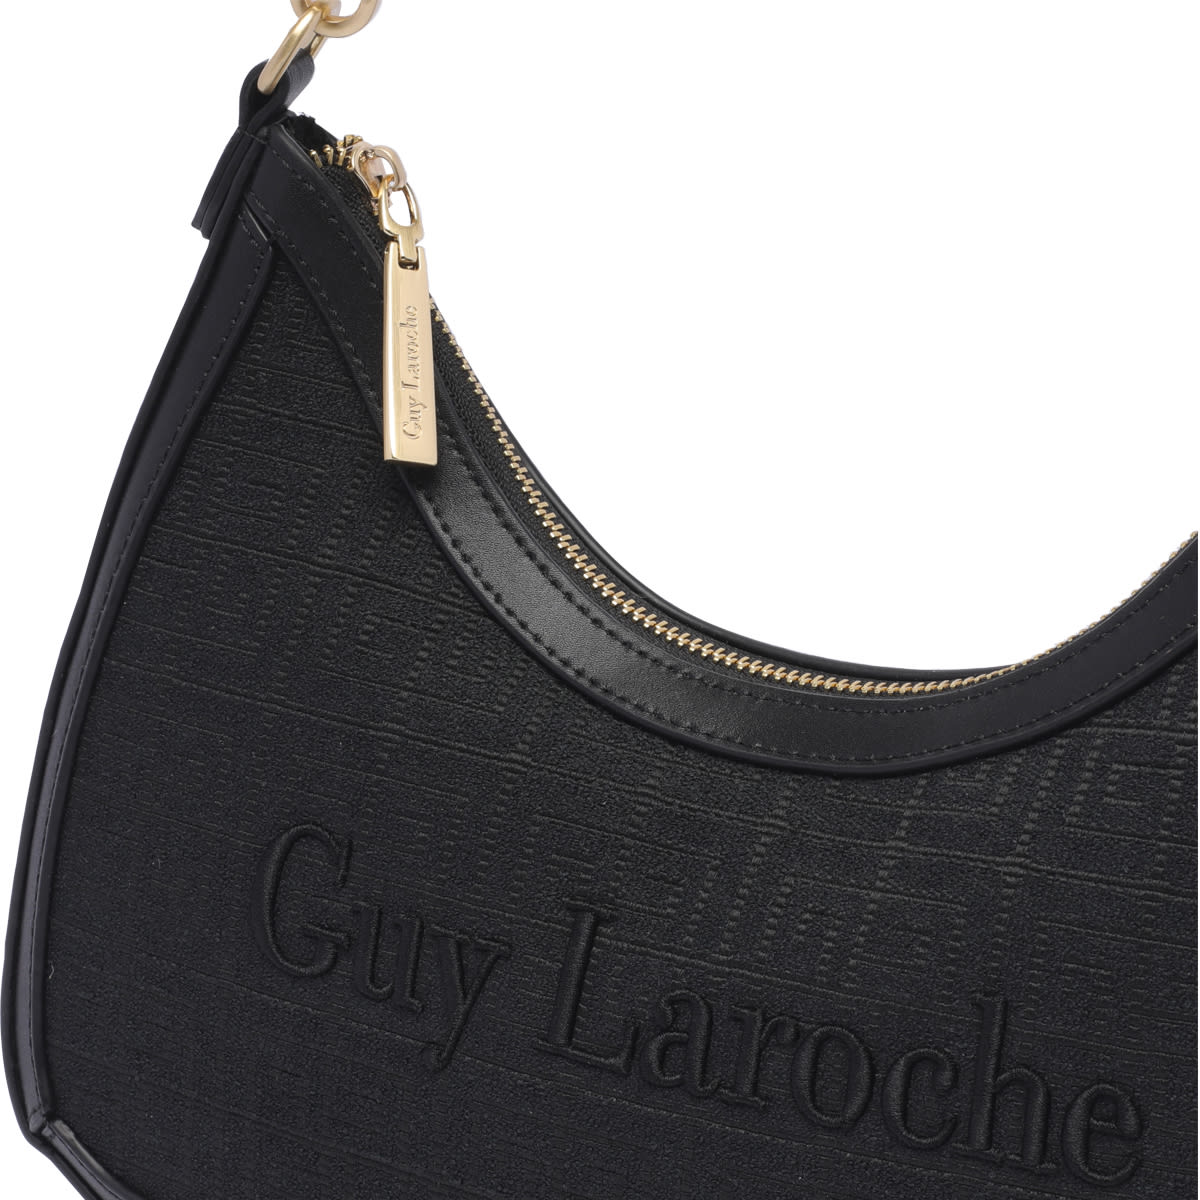 Guy Laroche Leather Shoulder Bag - Black Shoulder Bags, Handbags - GUY21011